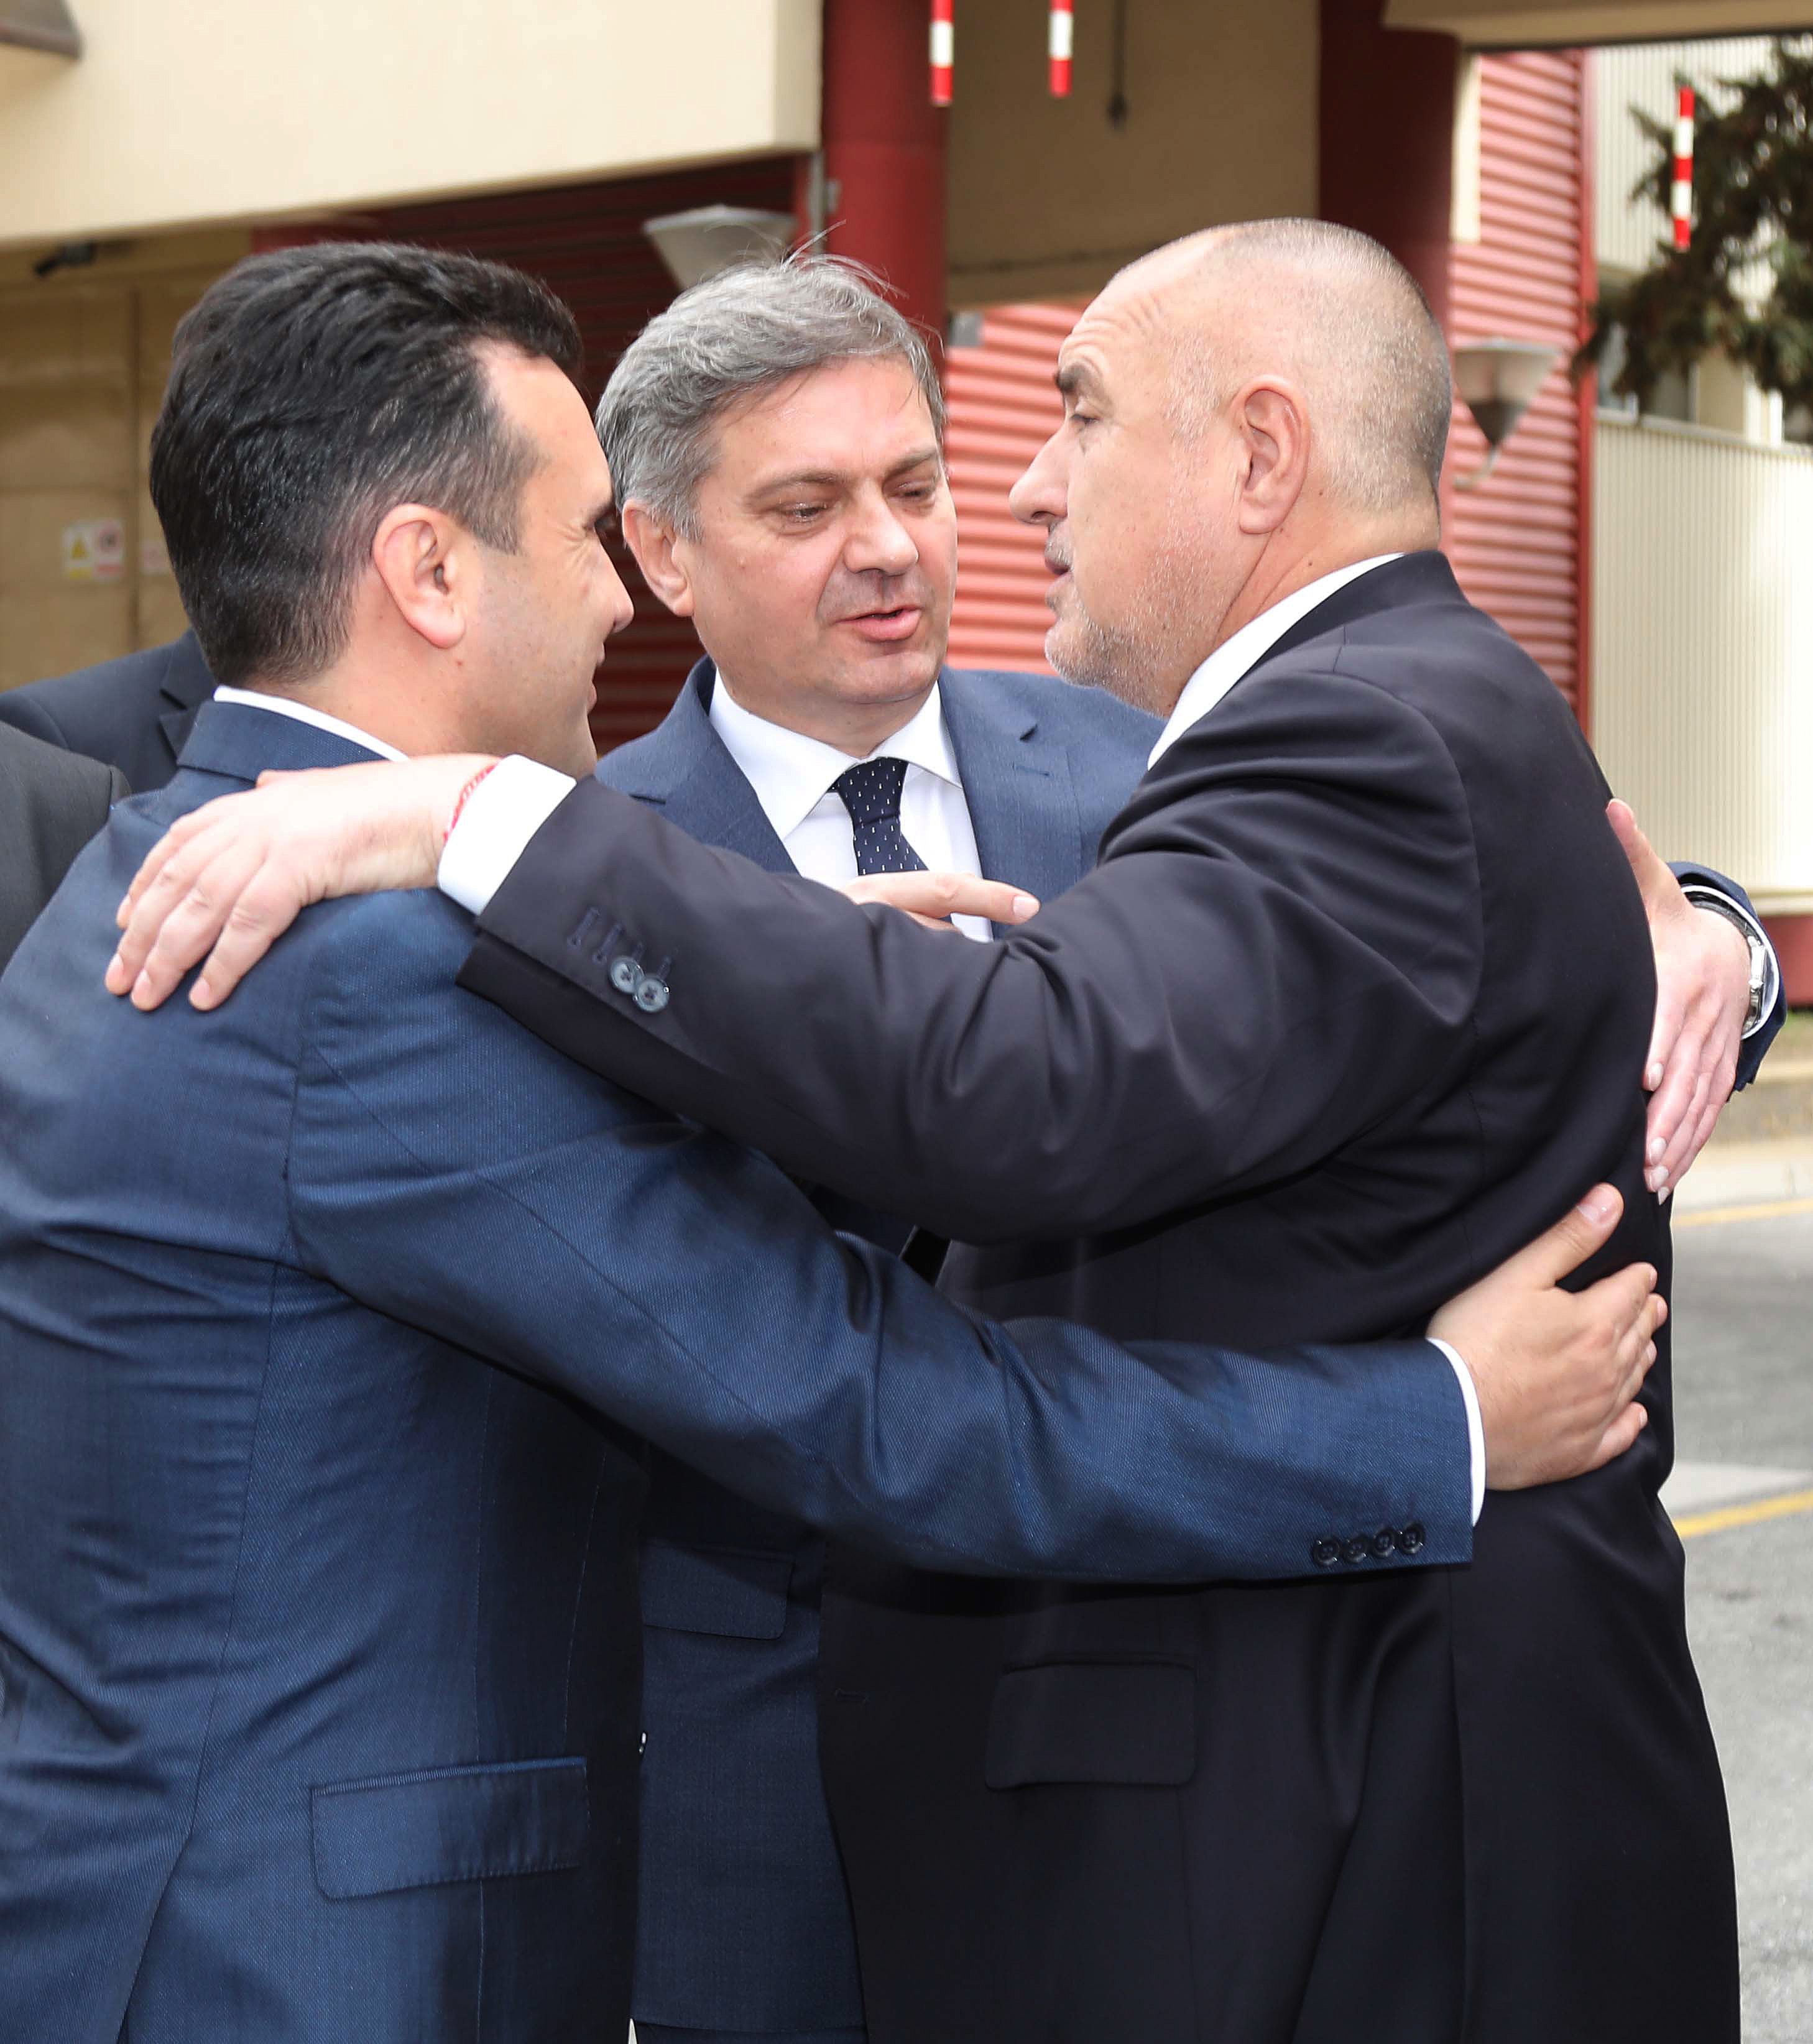 Скопска прегръдка между съседи на Балканите - премиерите на Македония, Босна и Херцеговина и България